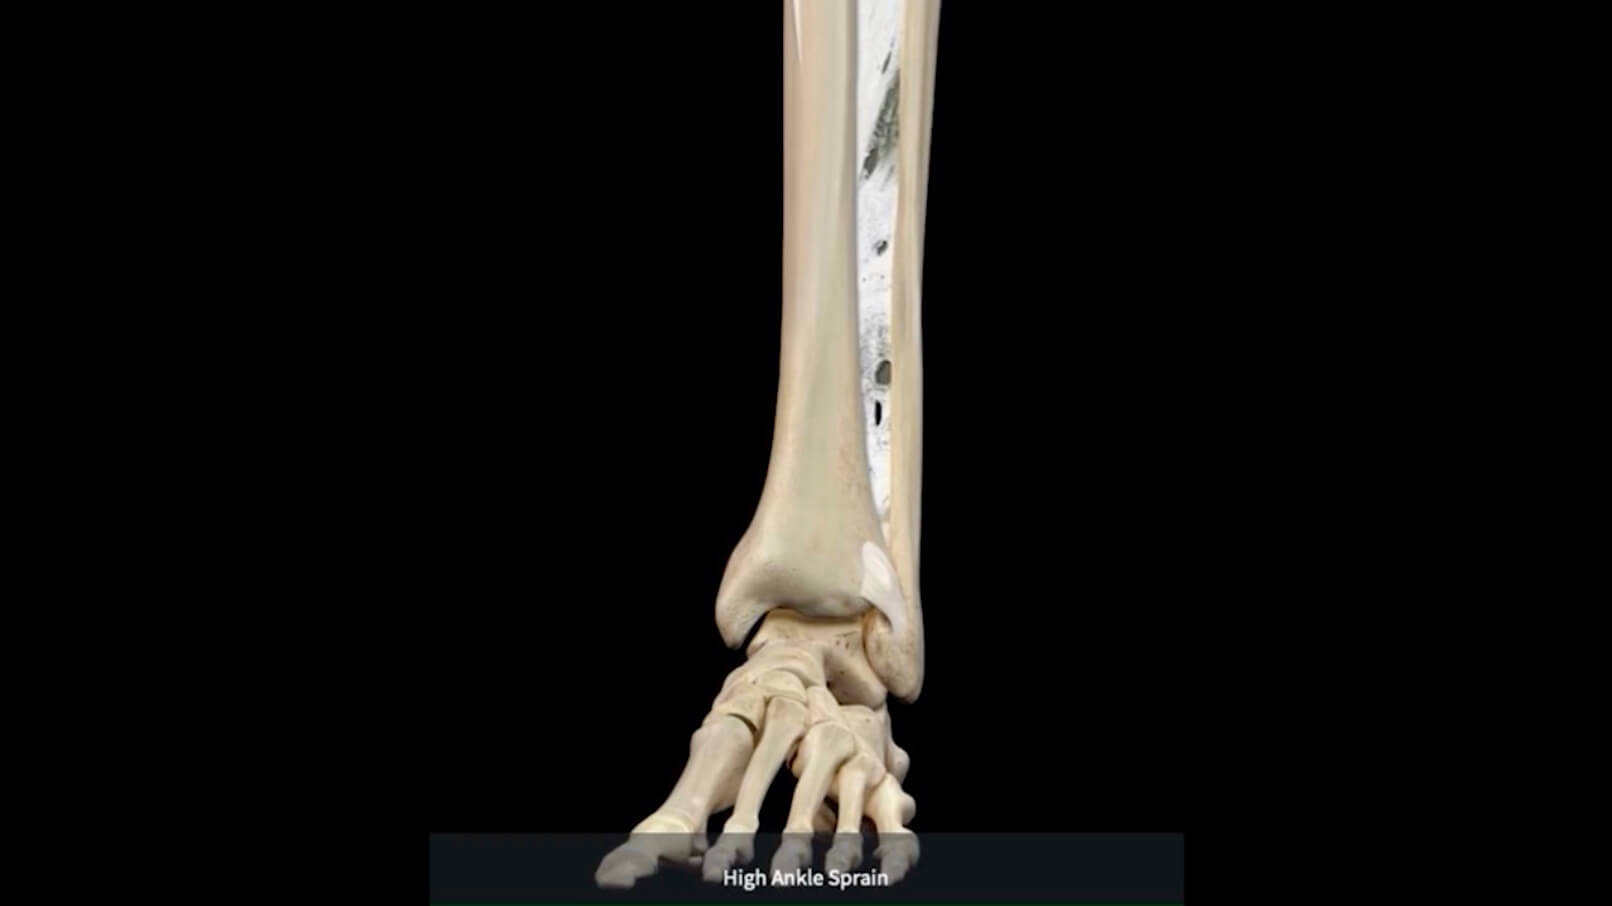 High Ankle Sprain DIAGNOSIS